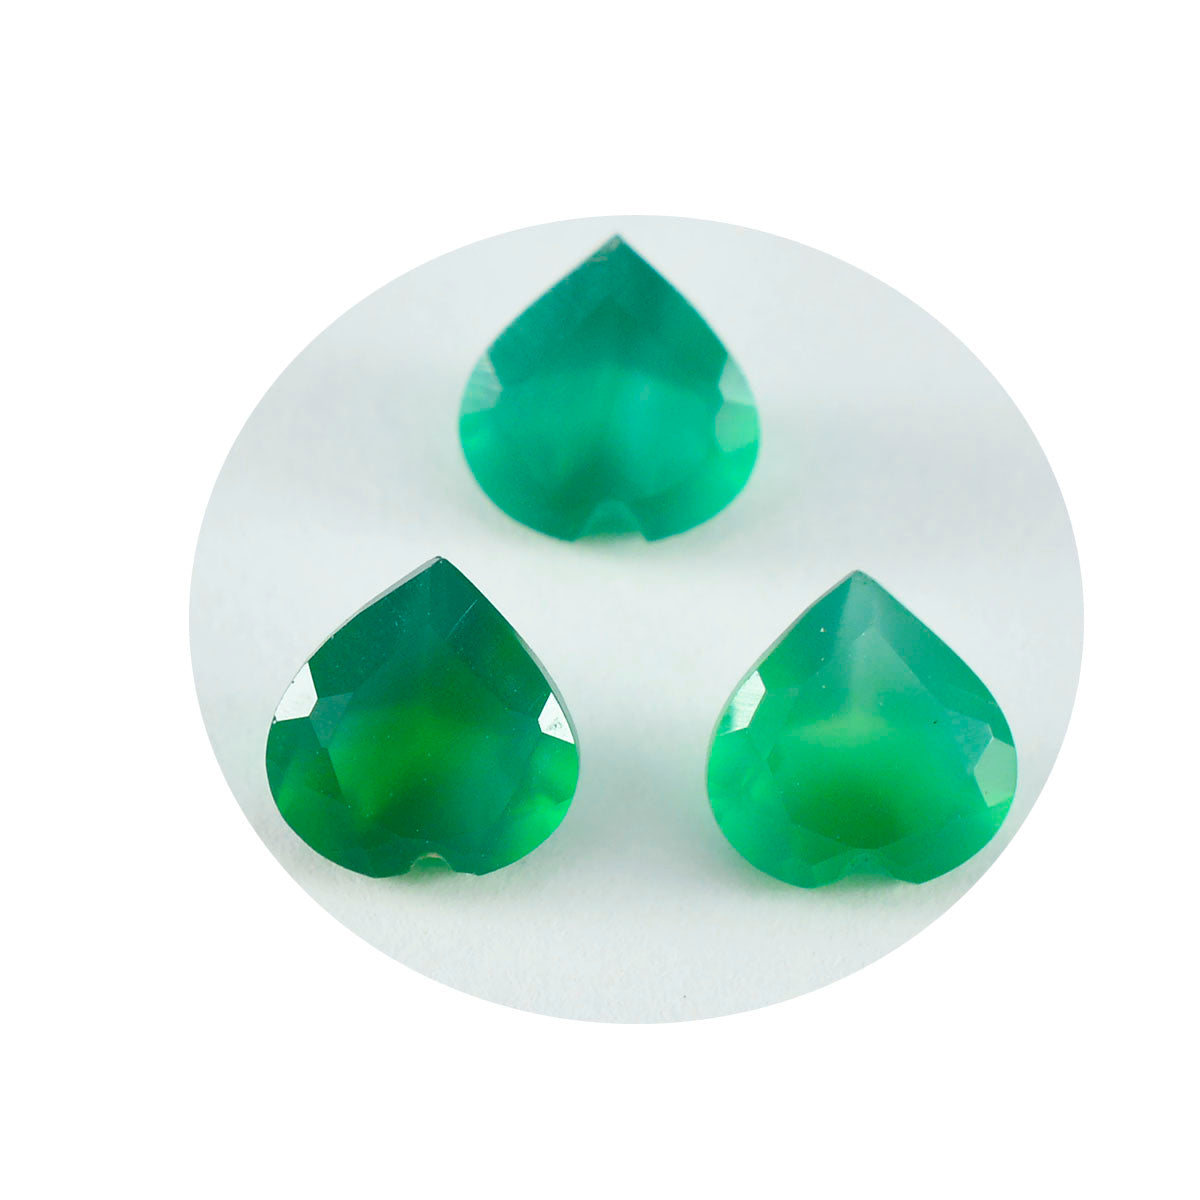 Riyogems 1 pièce d'onyx vert véritable à facettes 7x7mm en forme de cœur belles pierres précieuses de qualité